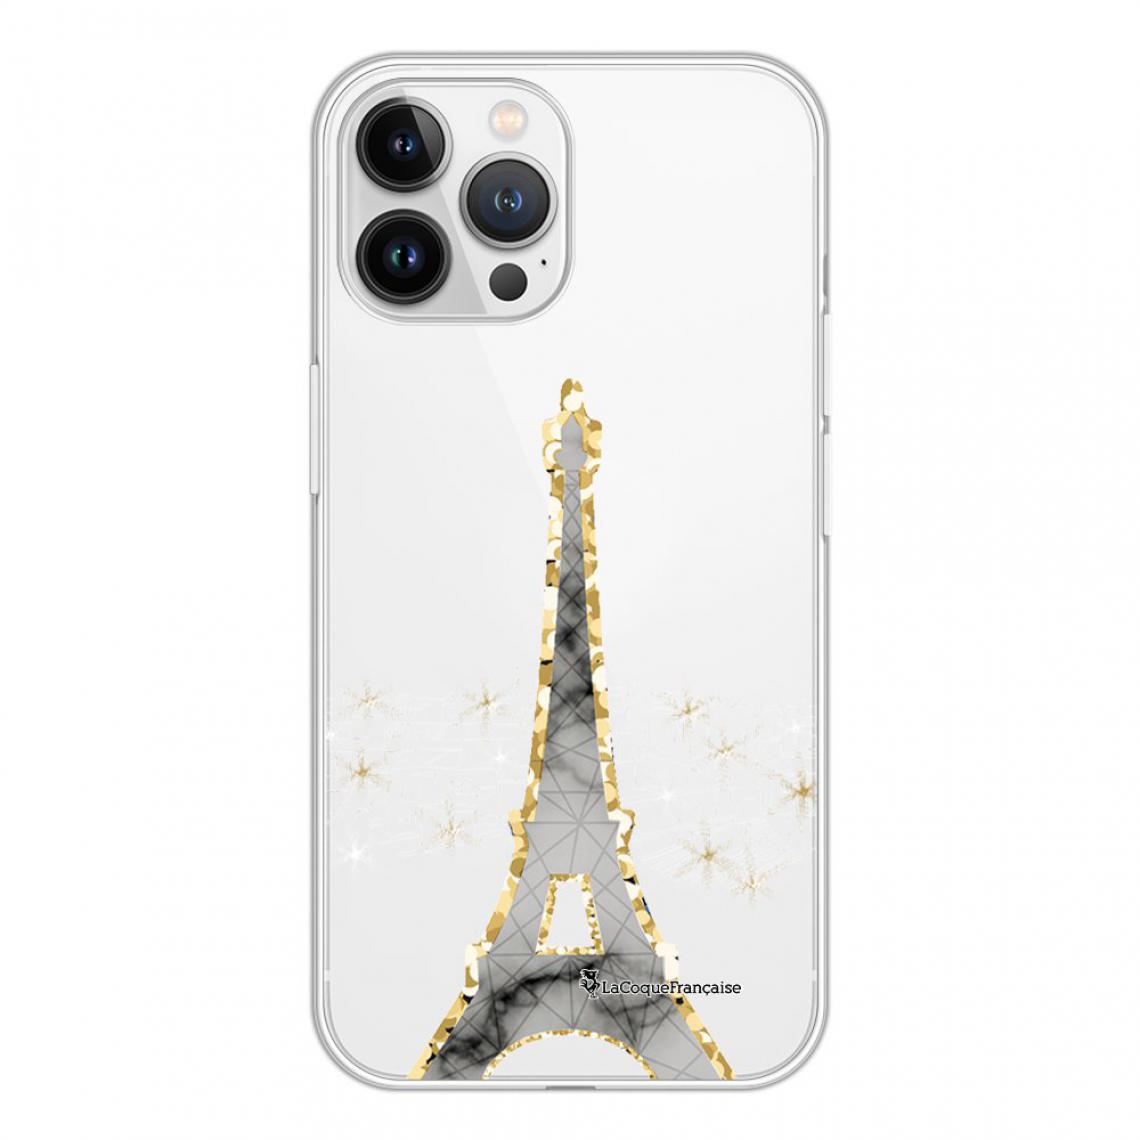 La Coque Francaise - Coque iPhone 13 Pro Max 360 intégrale avant arrière transparente - Coque, étui smartphone